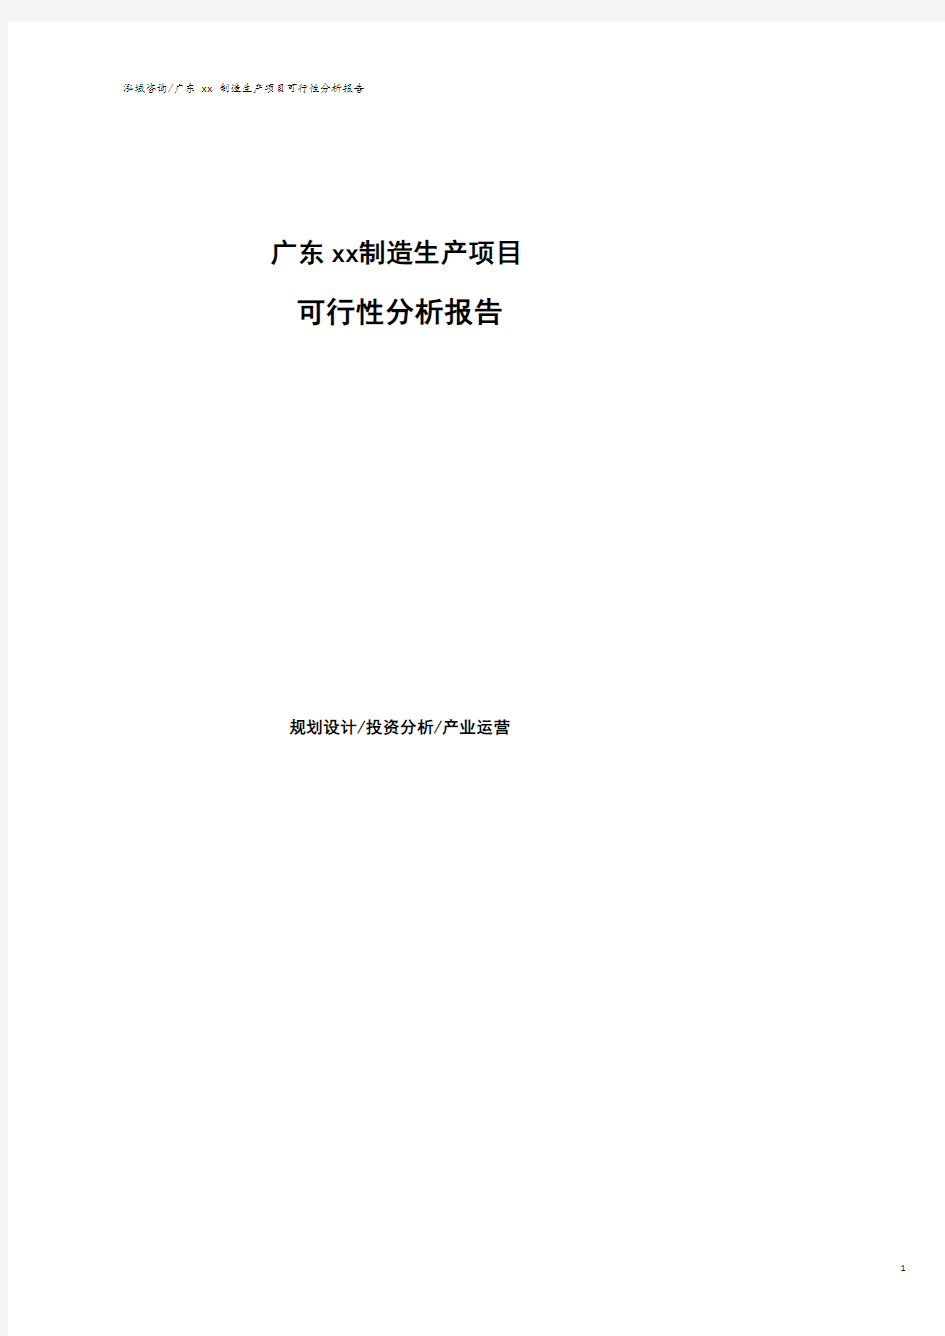 广东可行性研究报告(代项目建议书).pdf